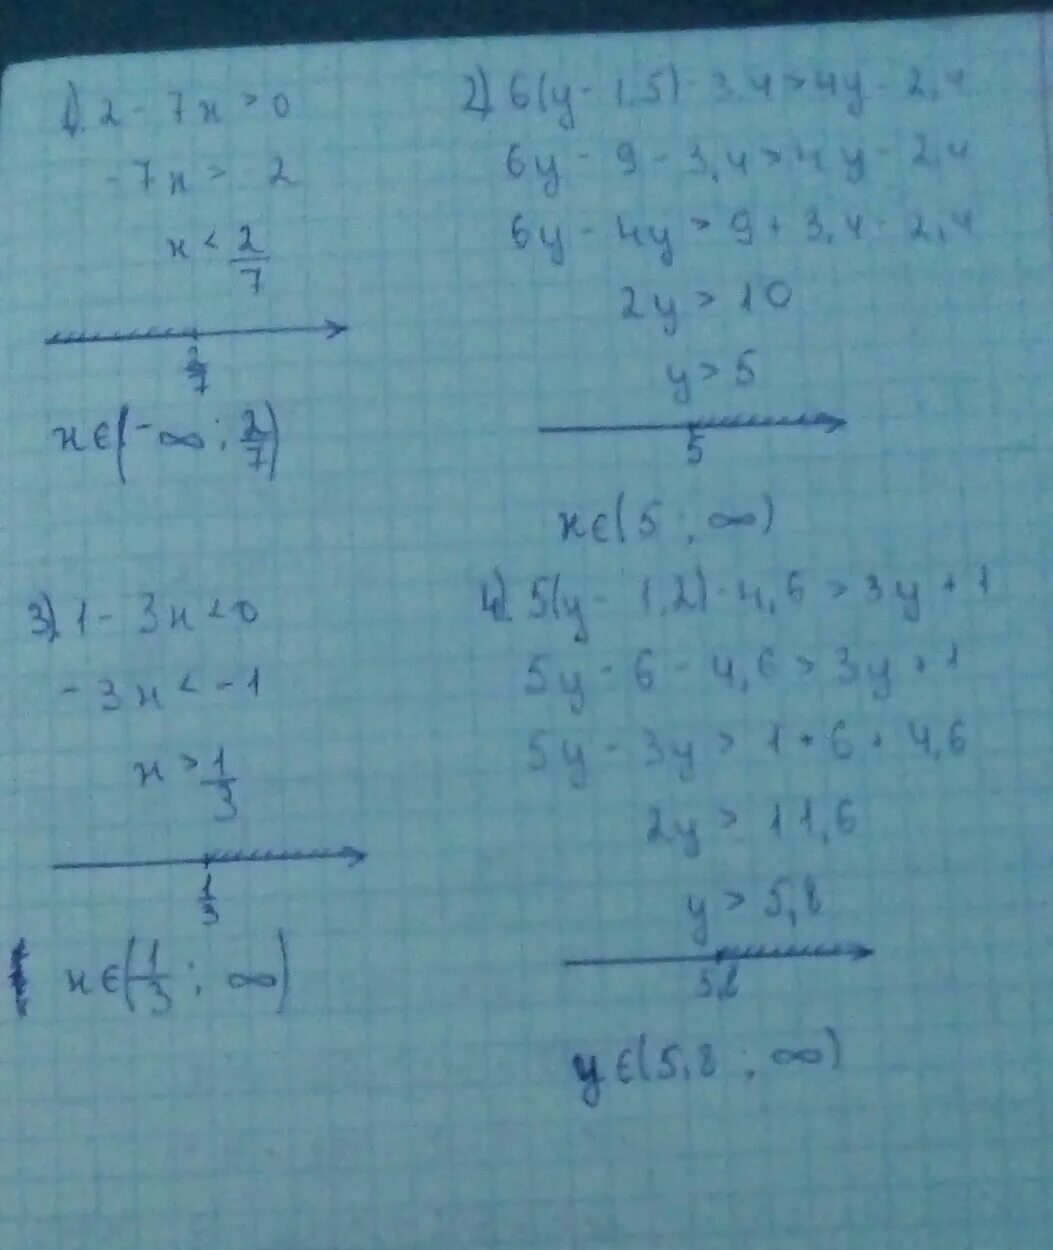 3x 4 x 1 2 решите. Y-5/4 <2y+3. 4у+1/2<у-4 неравенство. Решение -2(1,6x-y)+ 0,6(2x-1,3y). Система неравенства 1x +1y= 1 2 3x-y=3. Решить неравенство (x-1)^2+y 2.